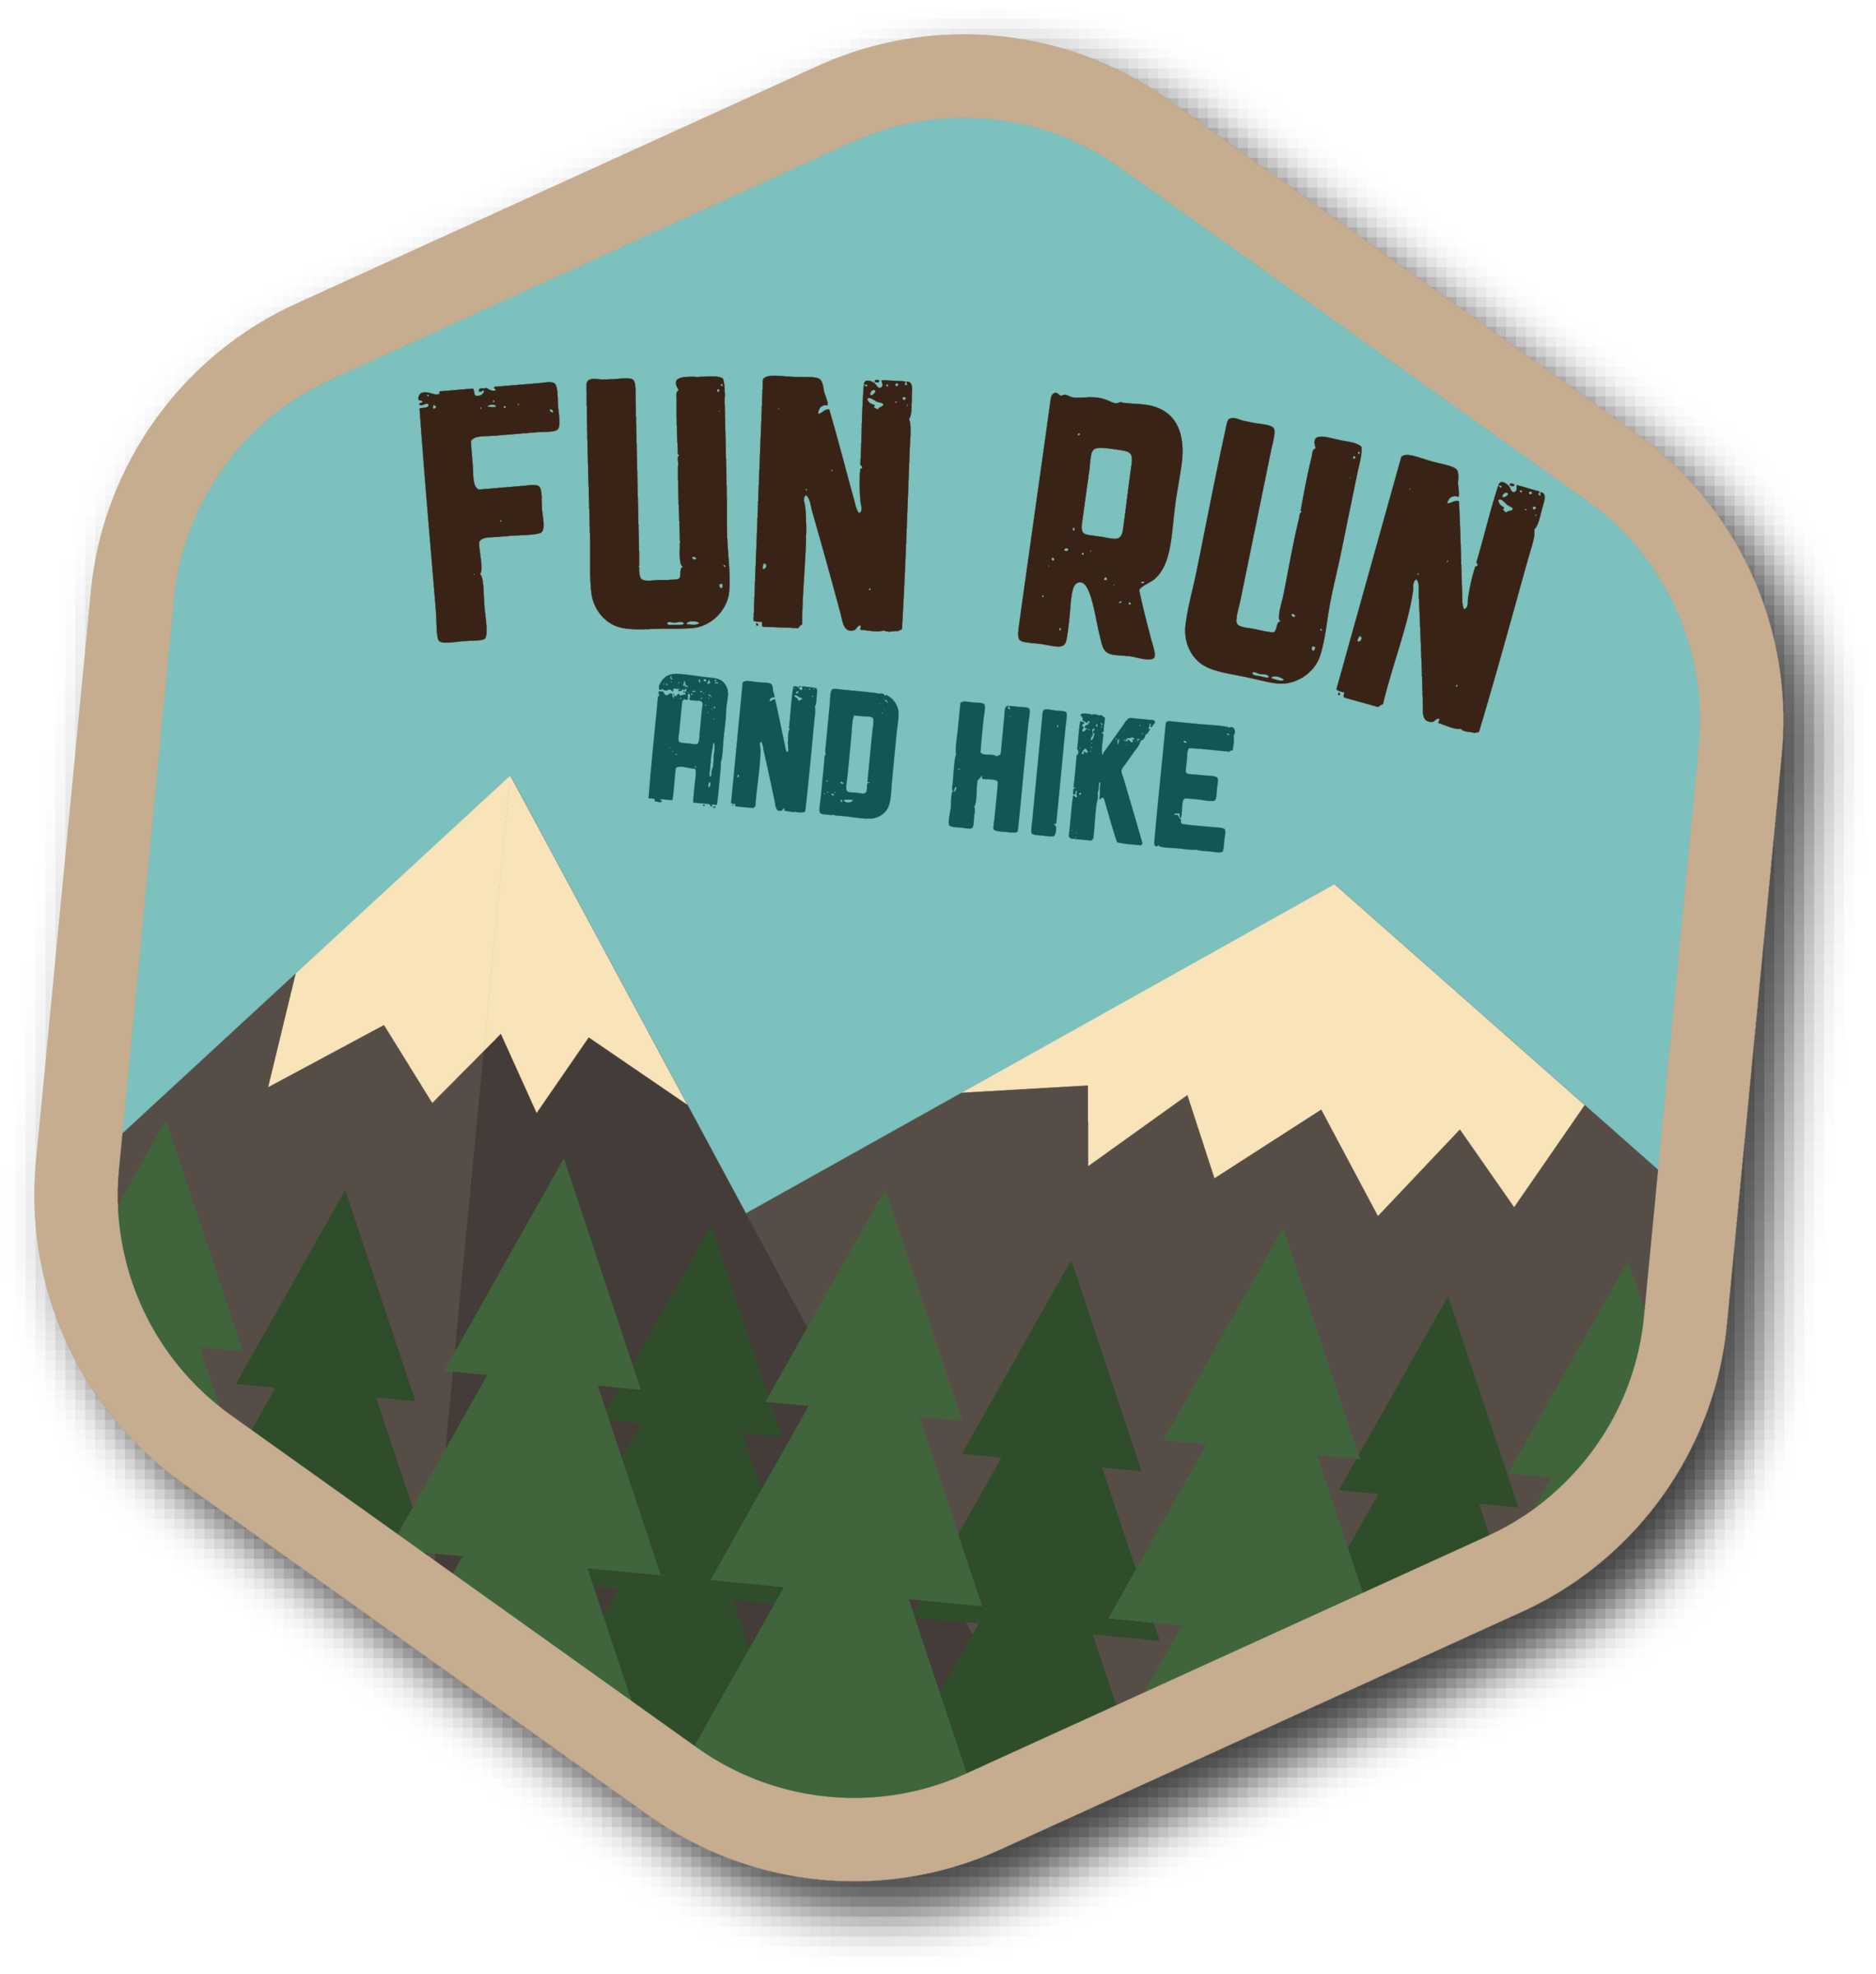 Fun Run and Hike